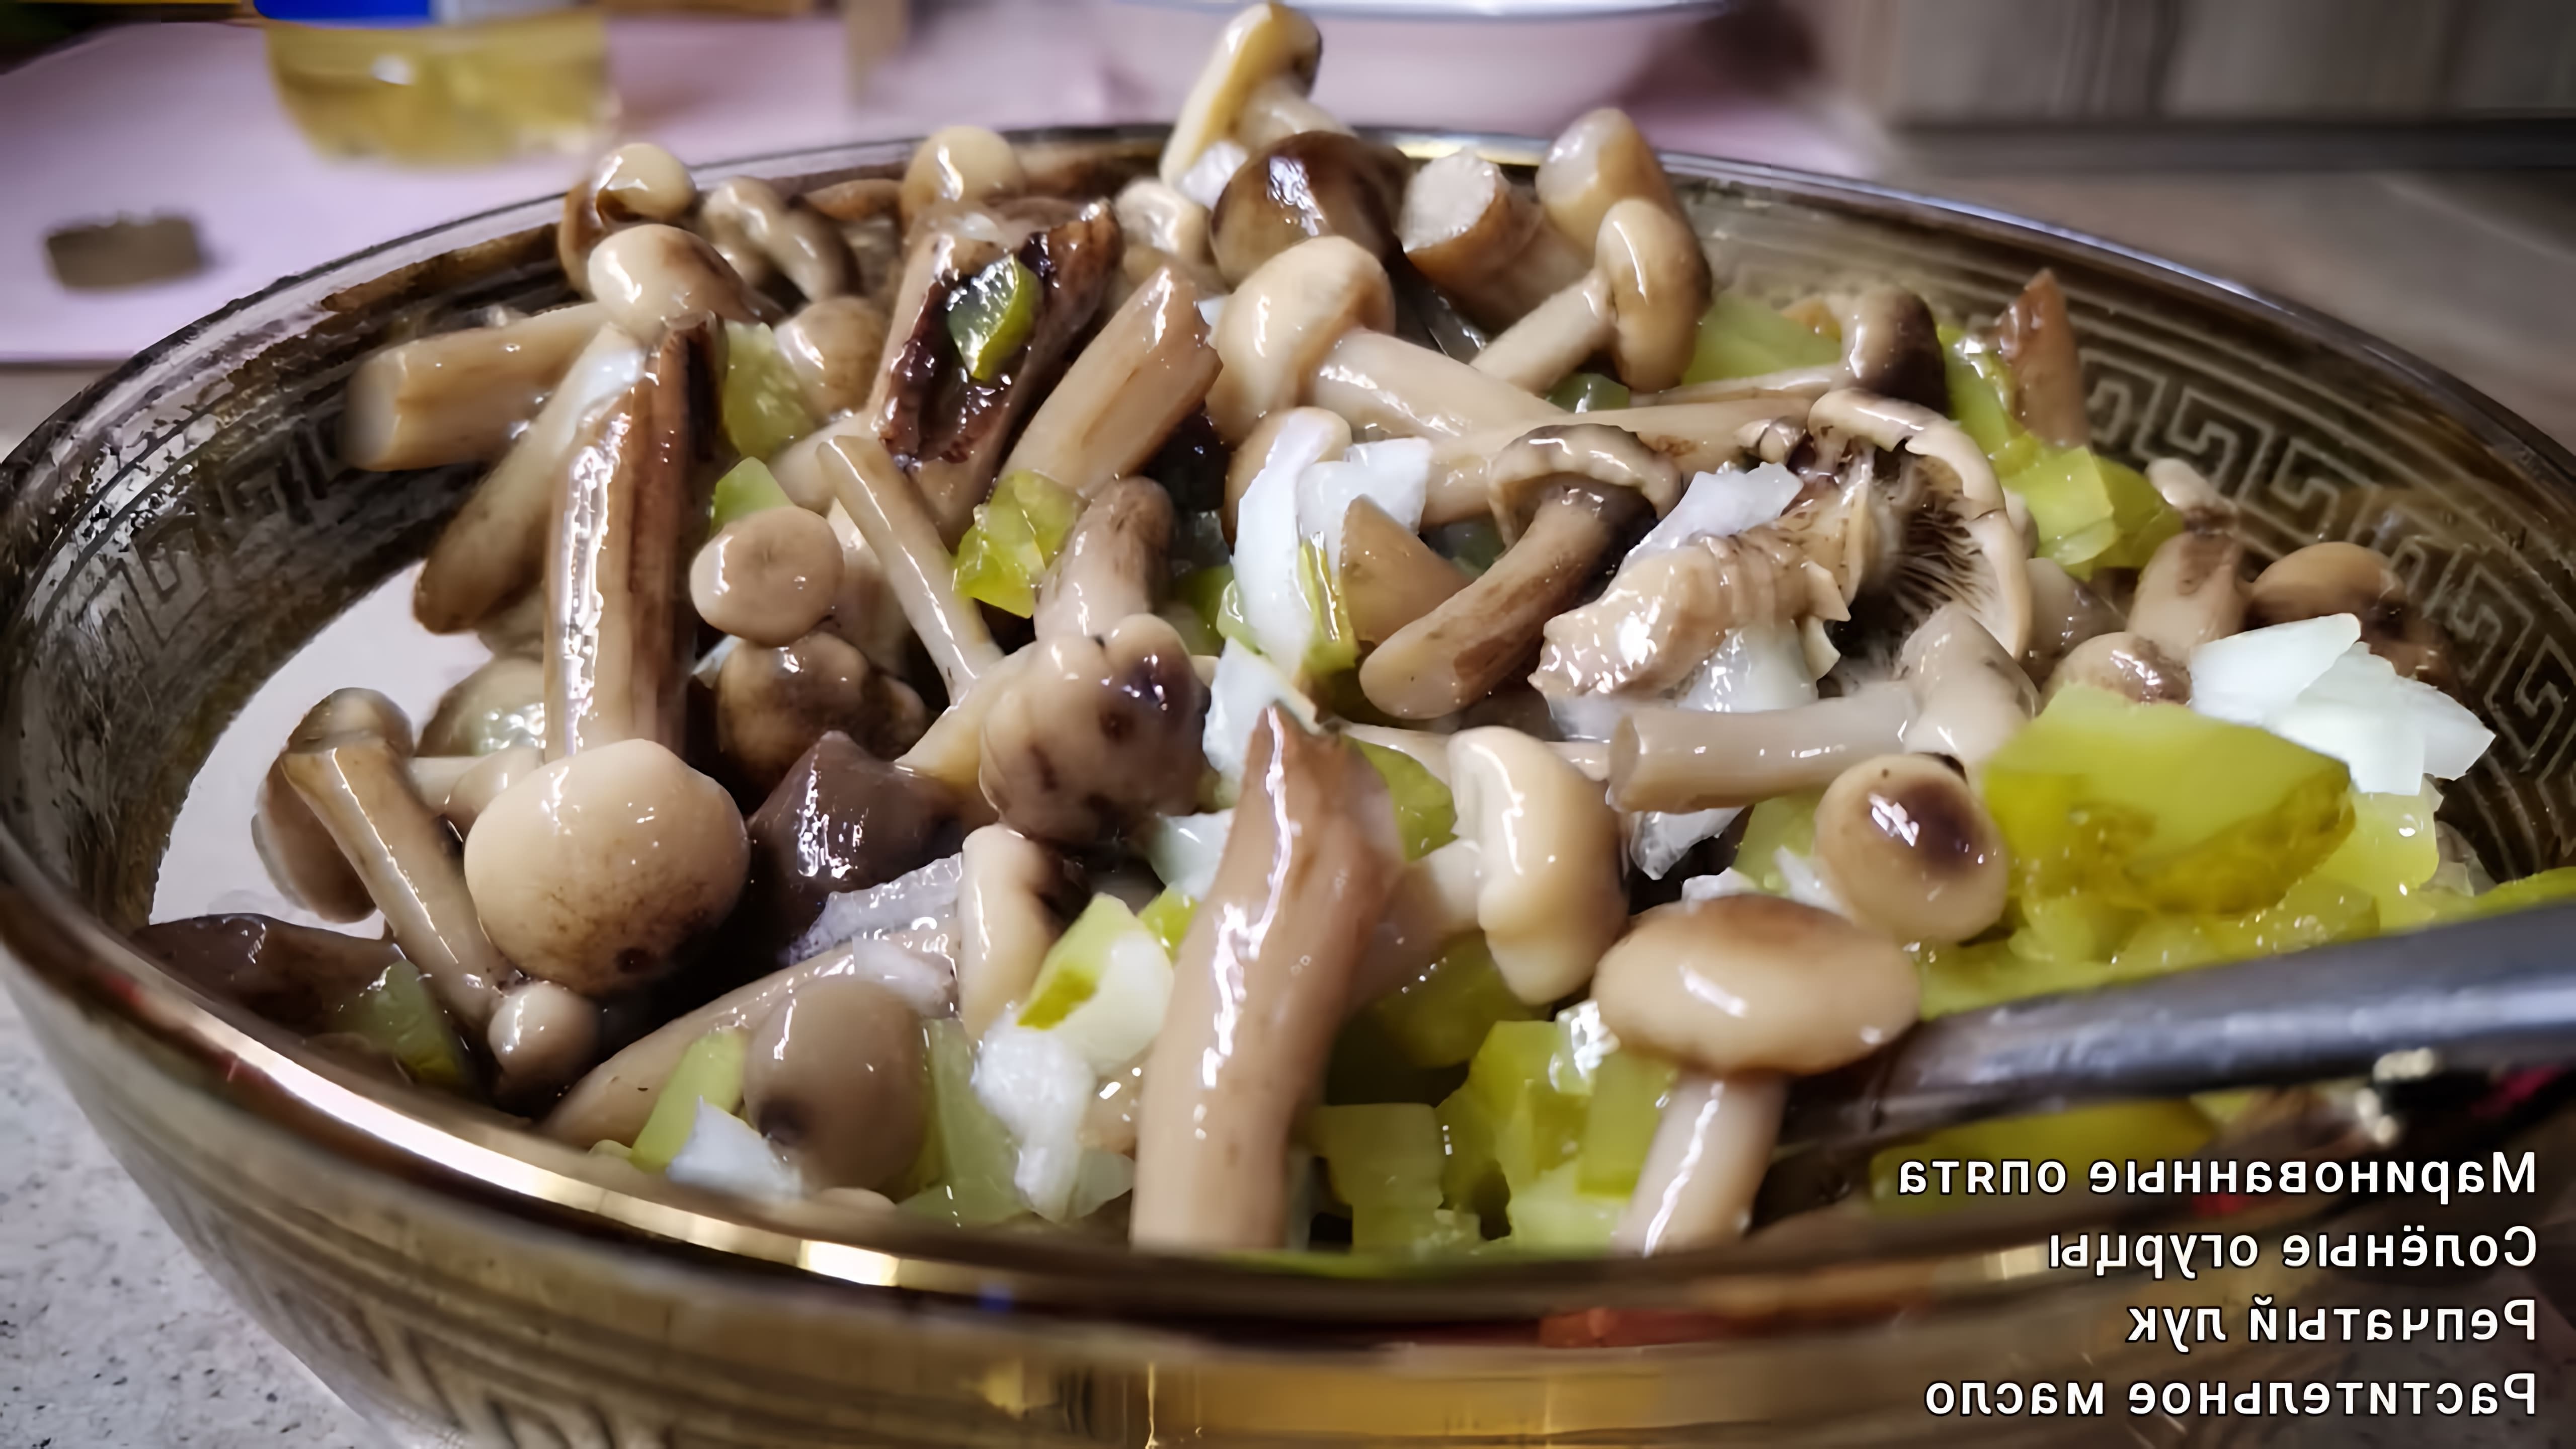 Салат закуска из маринованных грибов и солёных огурцов - это быстрый и вкусный рецепт, который можно приготовить за несколько минут